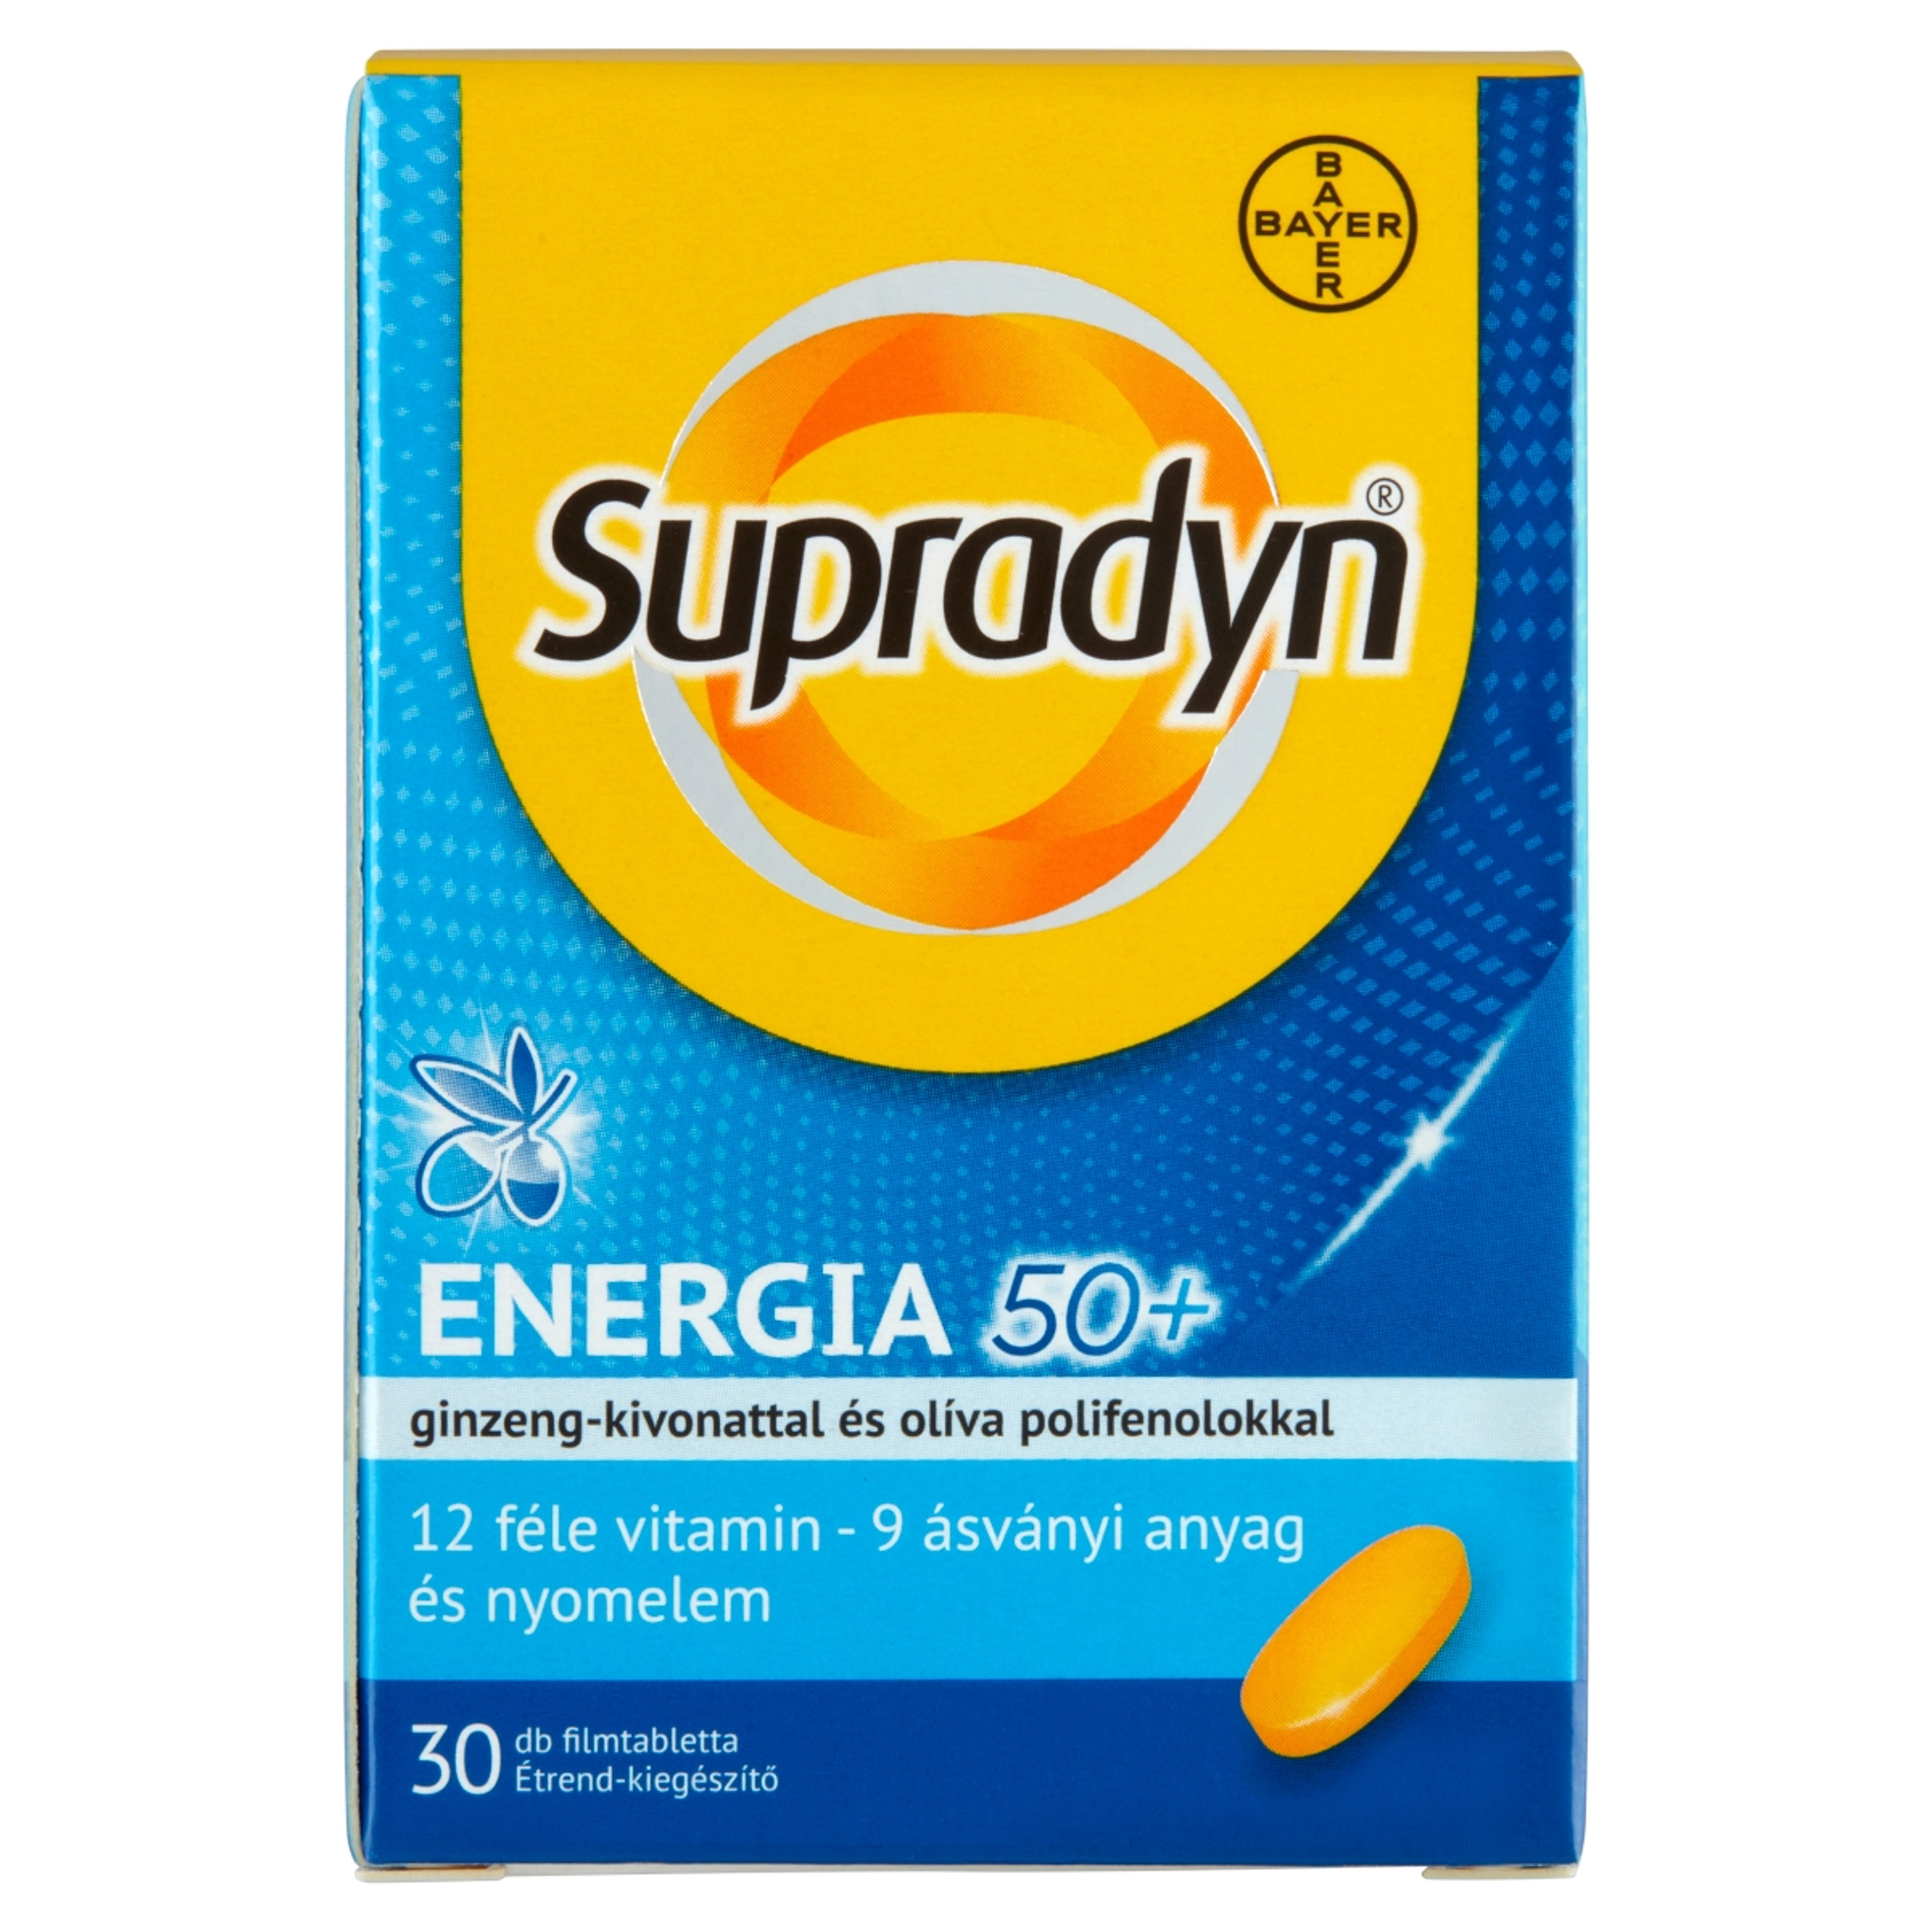 Supradyn Energia 50+ filmtabletta - 30 db